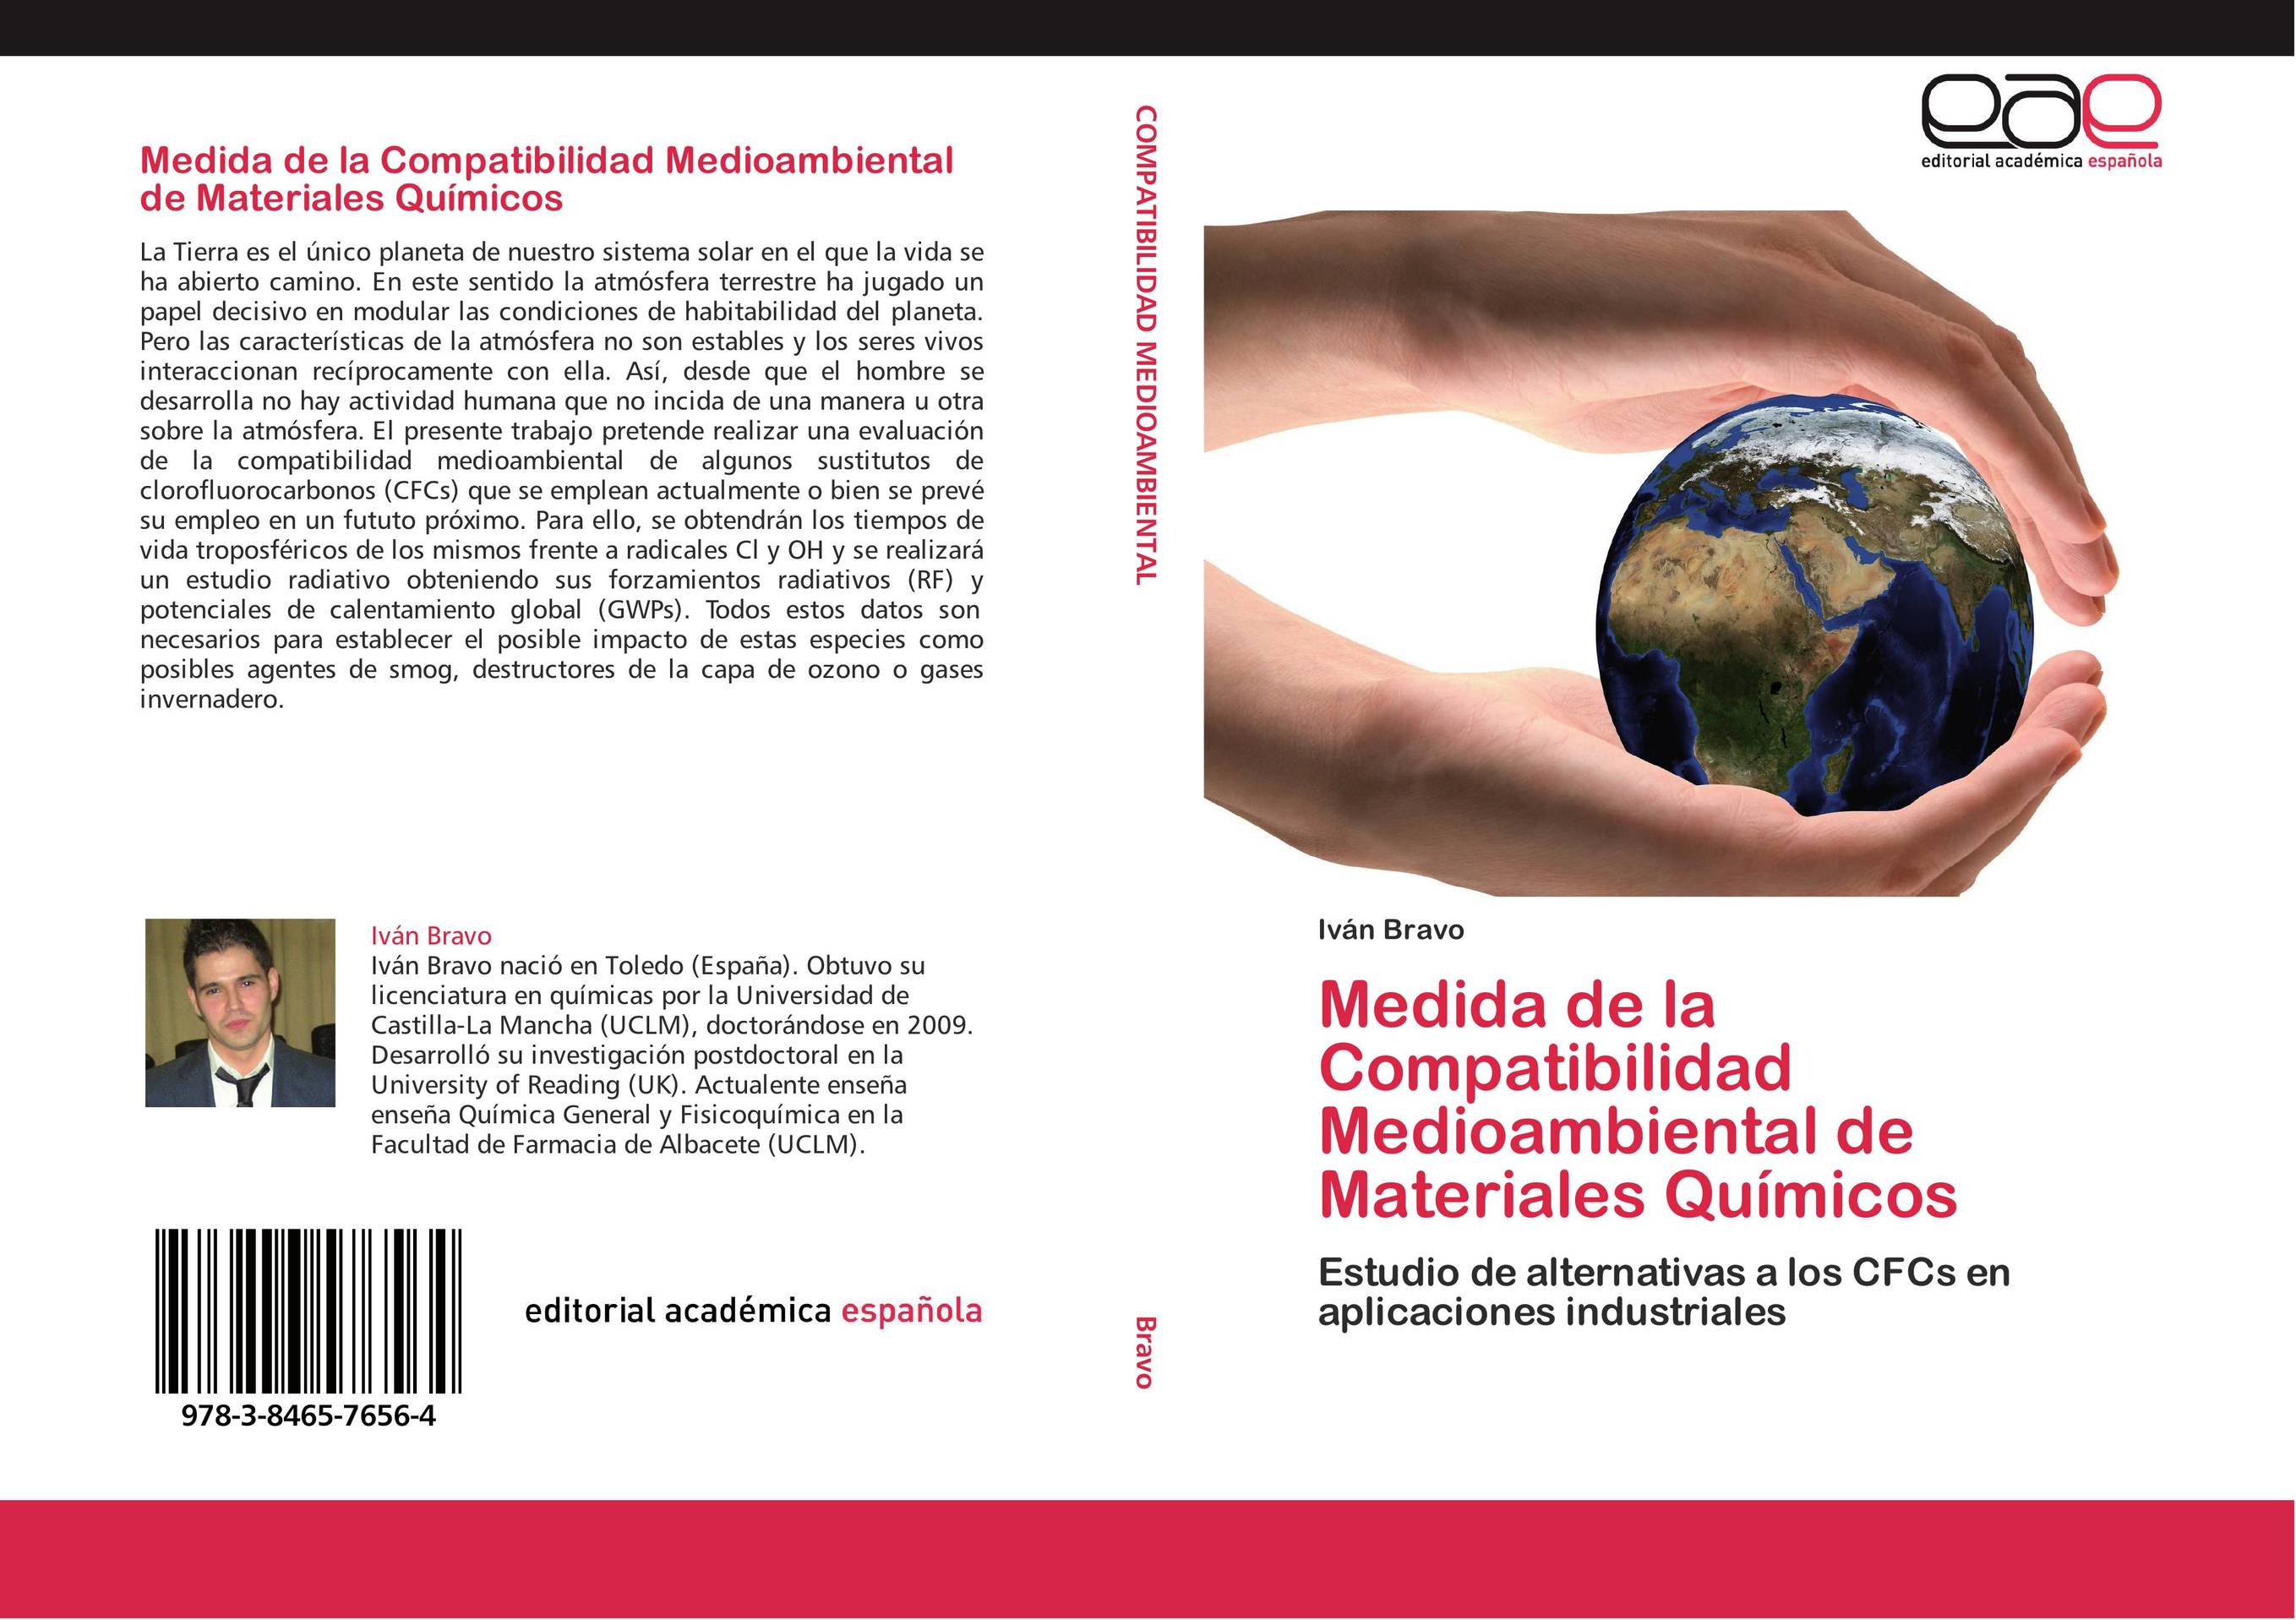 Medida de la Compatibilidad Medioambiental de Materiales Químicos